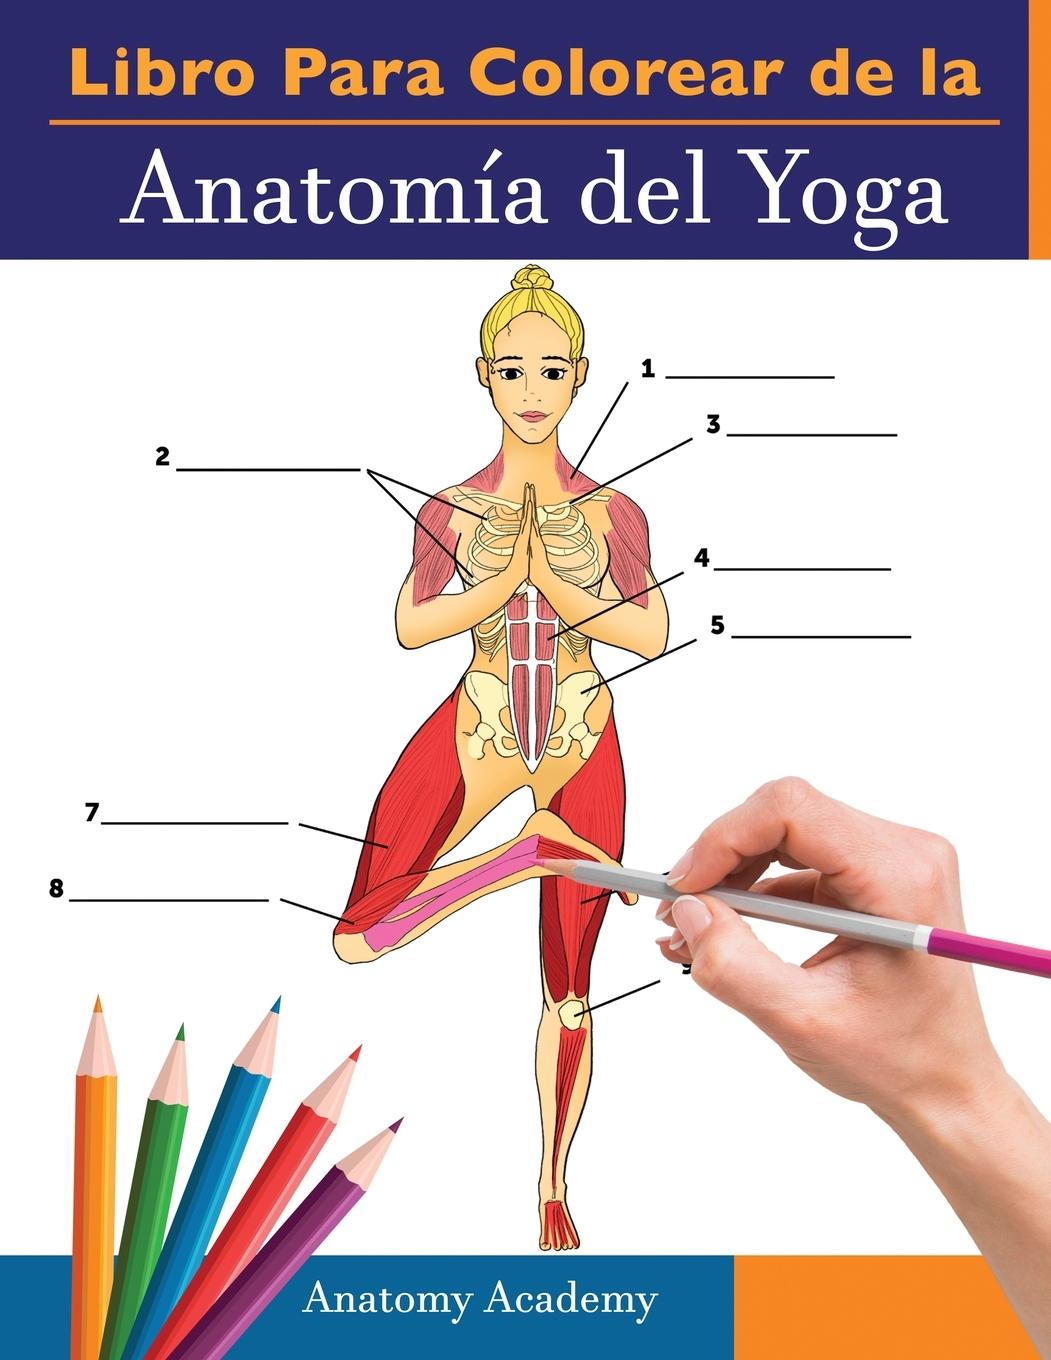 Kniha Libro Para Colorear de la Anatomia del Yoga 